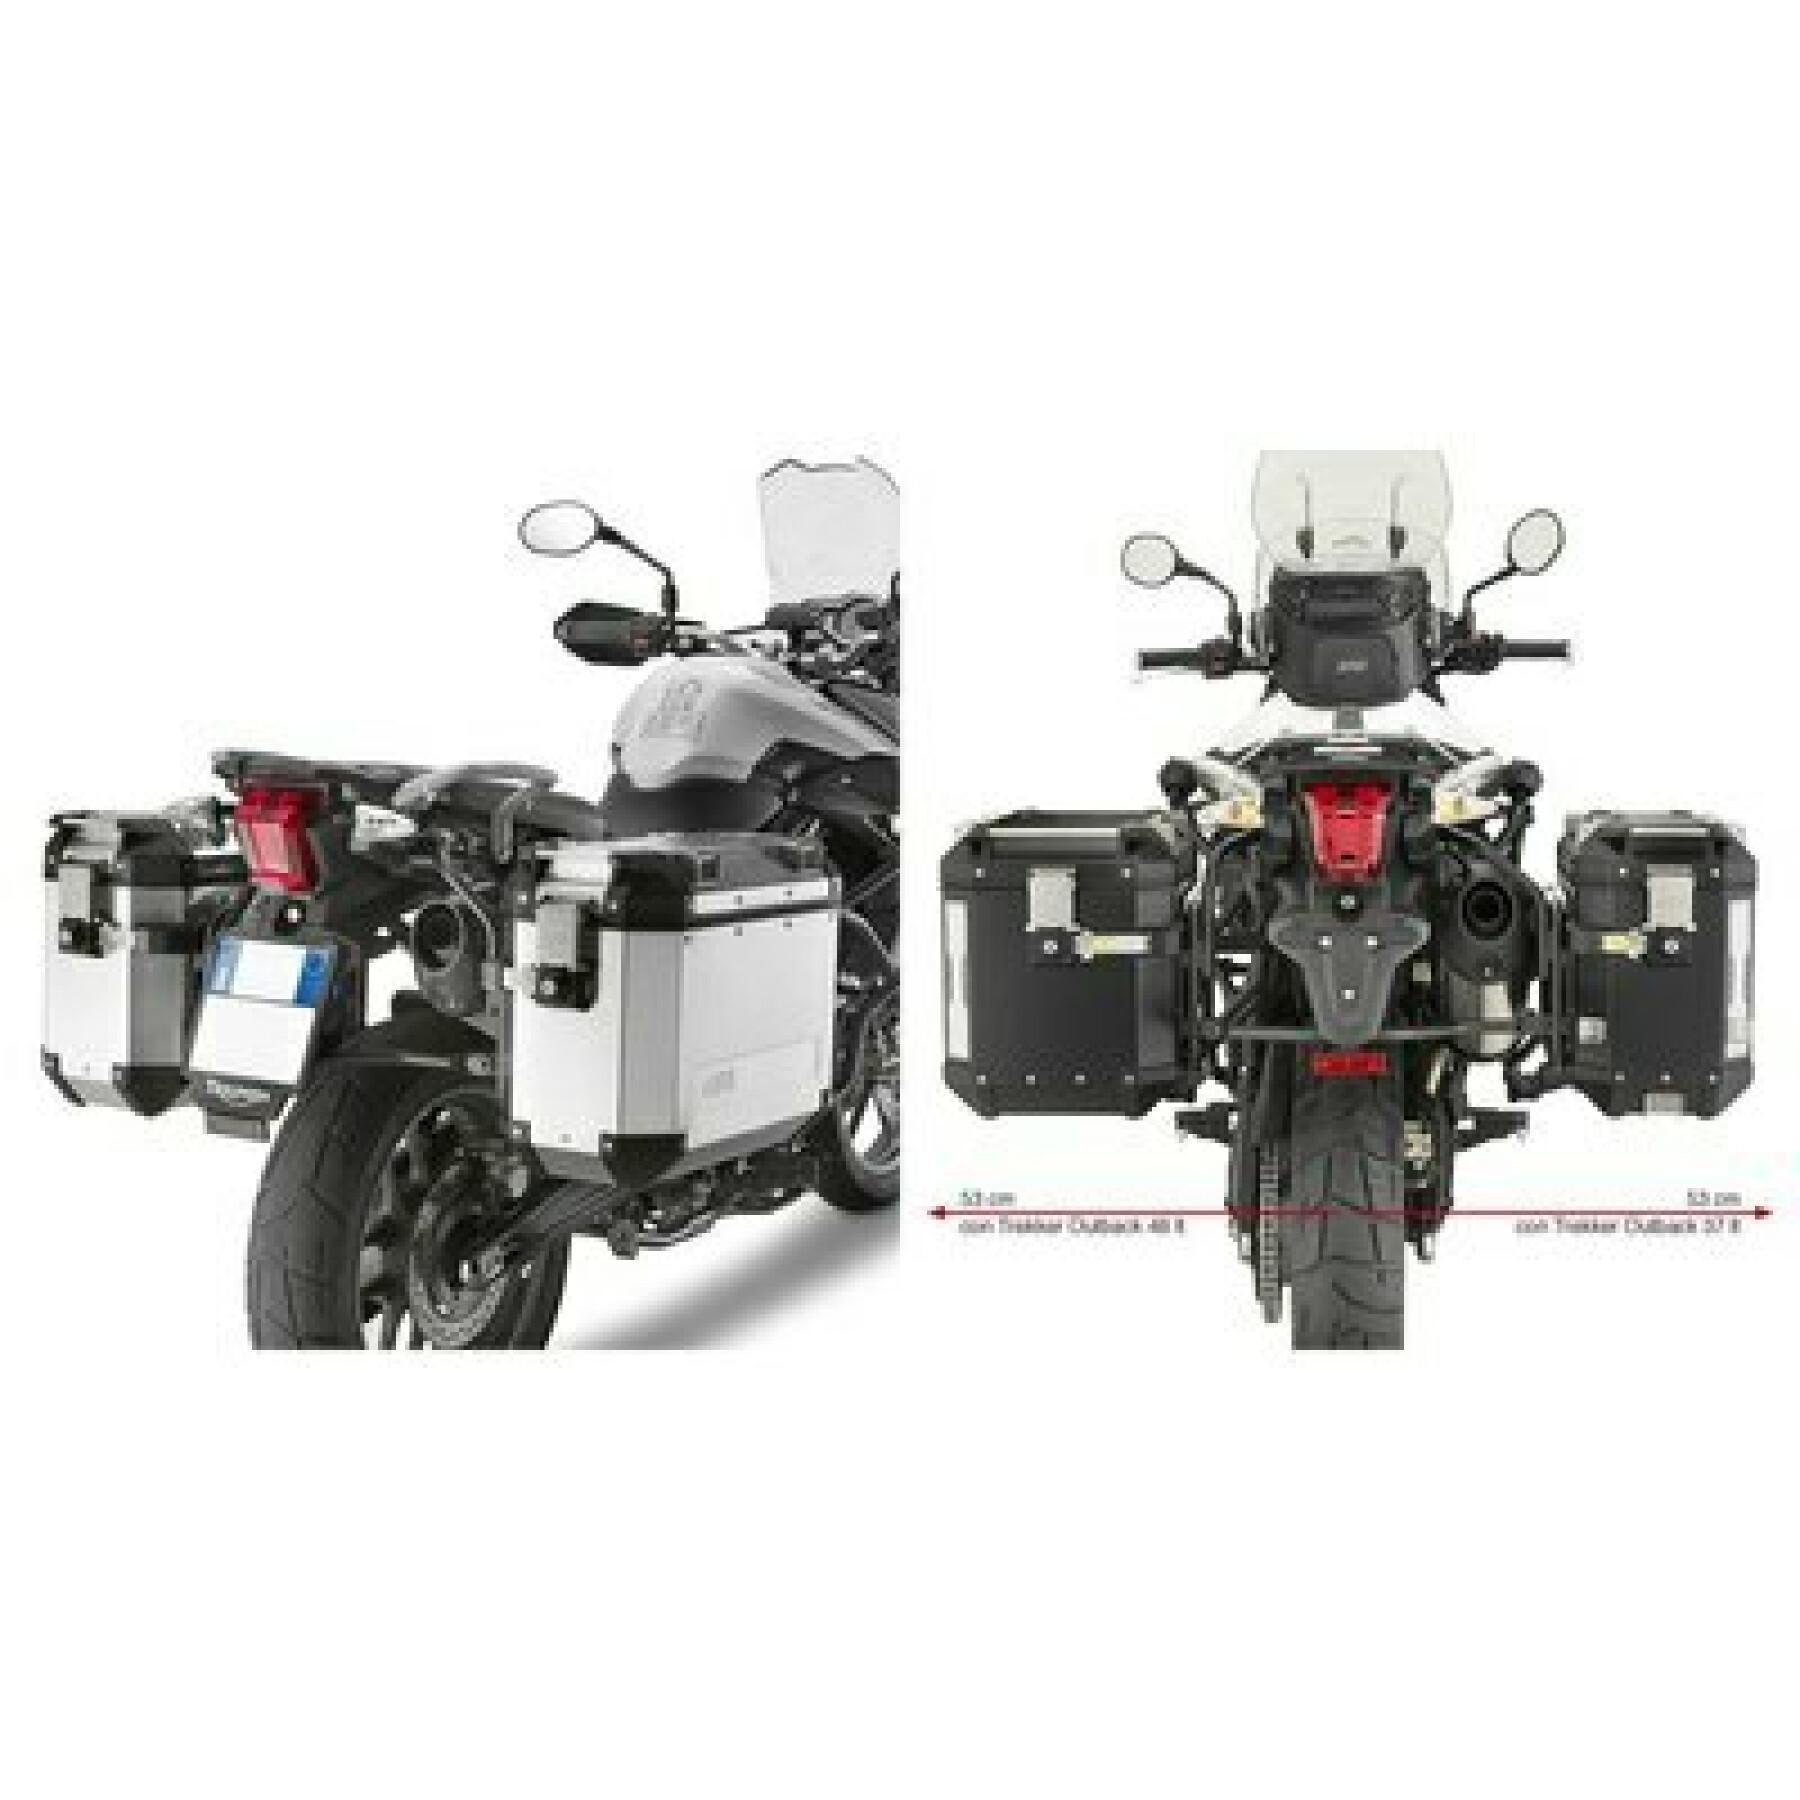 Sangle moto Protaper 11-099F - Accessoires - Valises latérales - Bagagerie